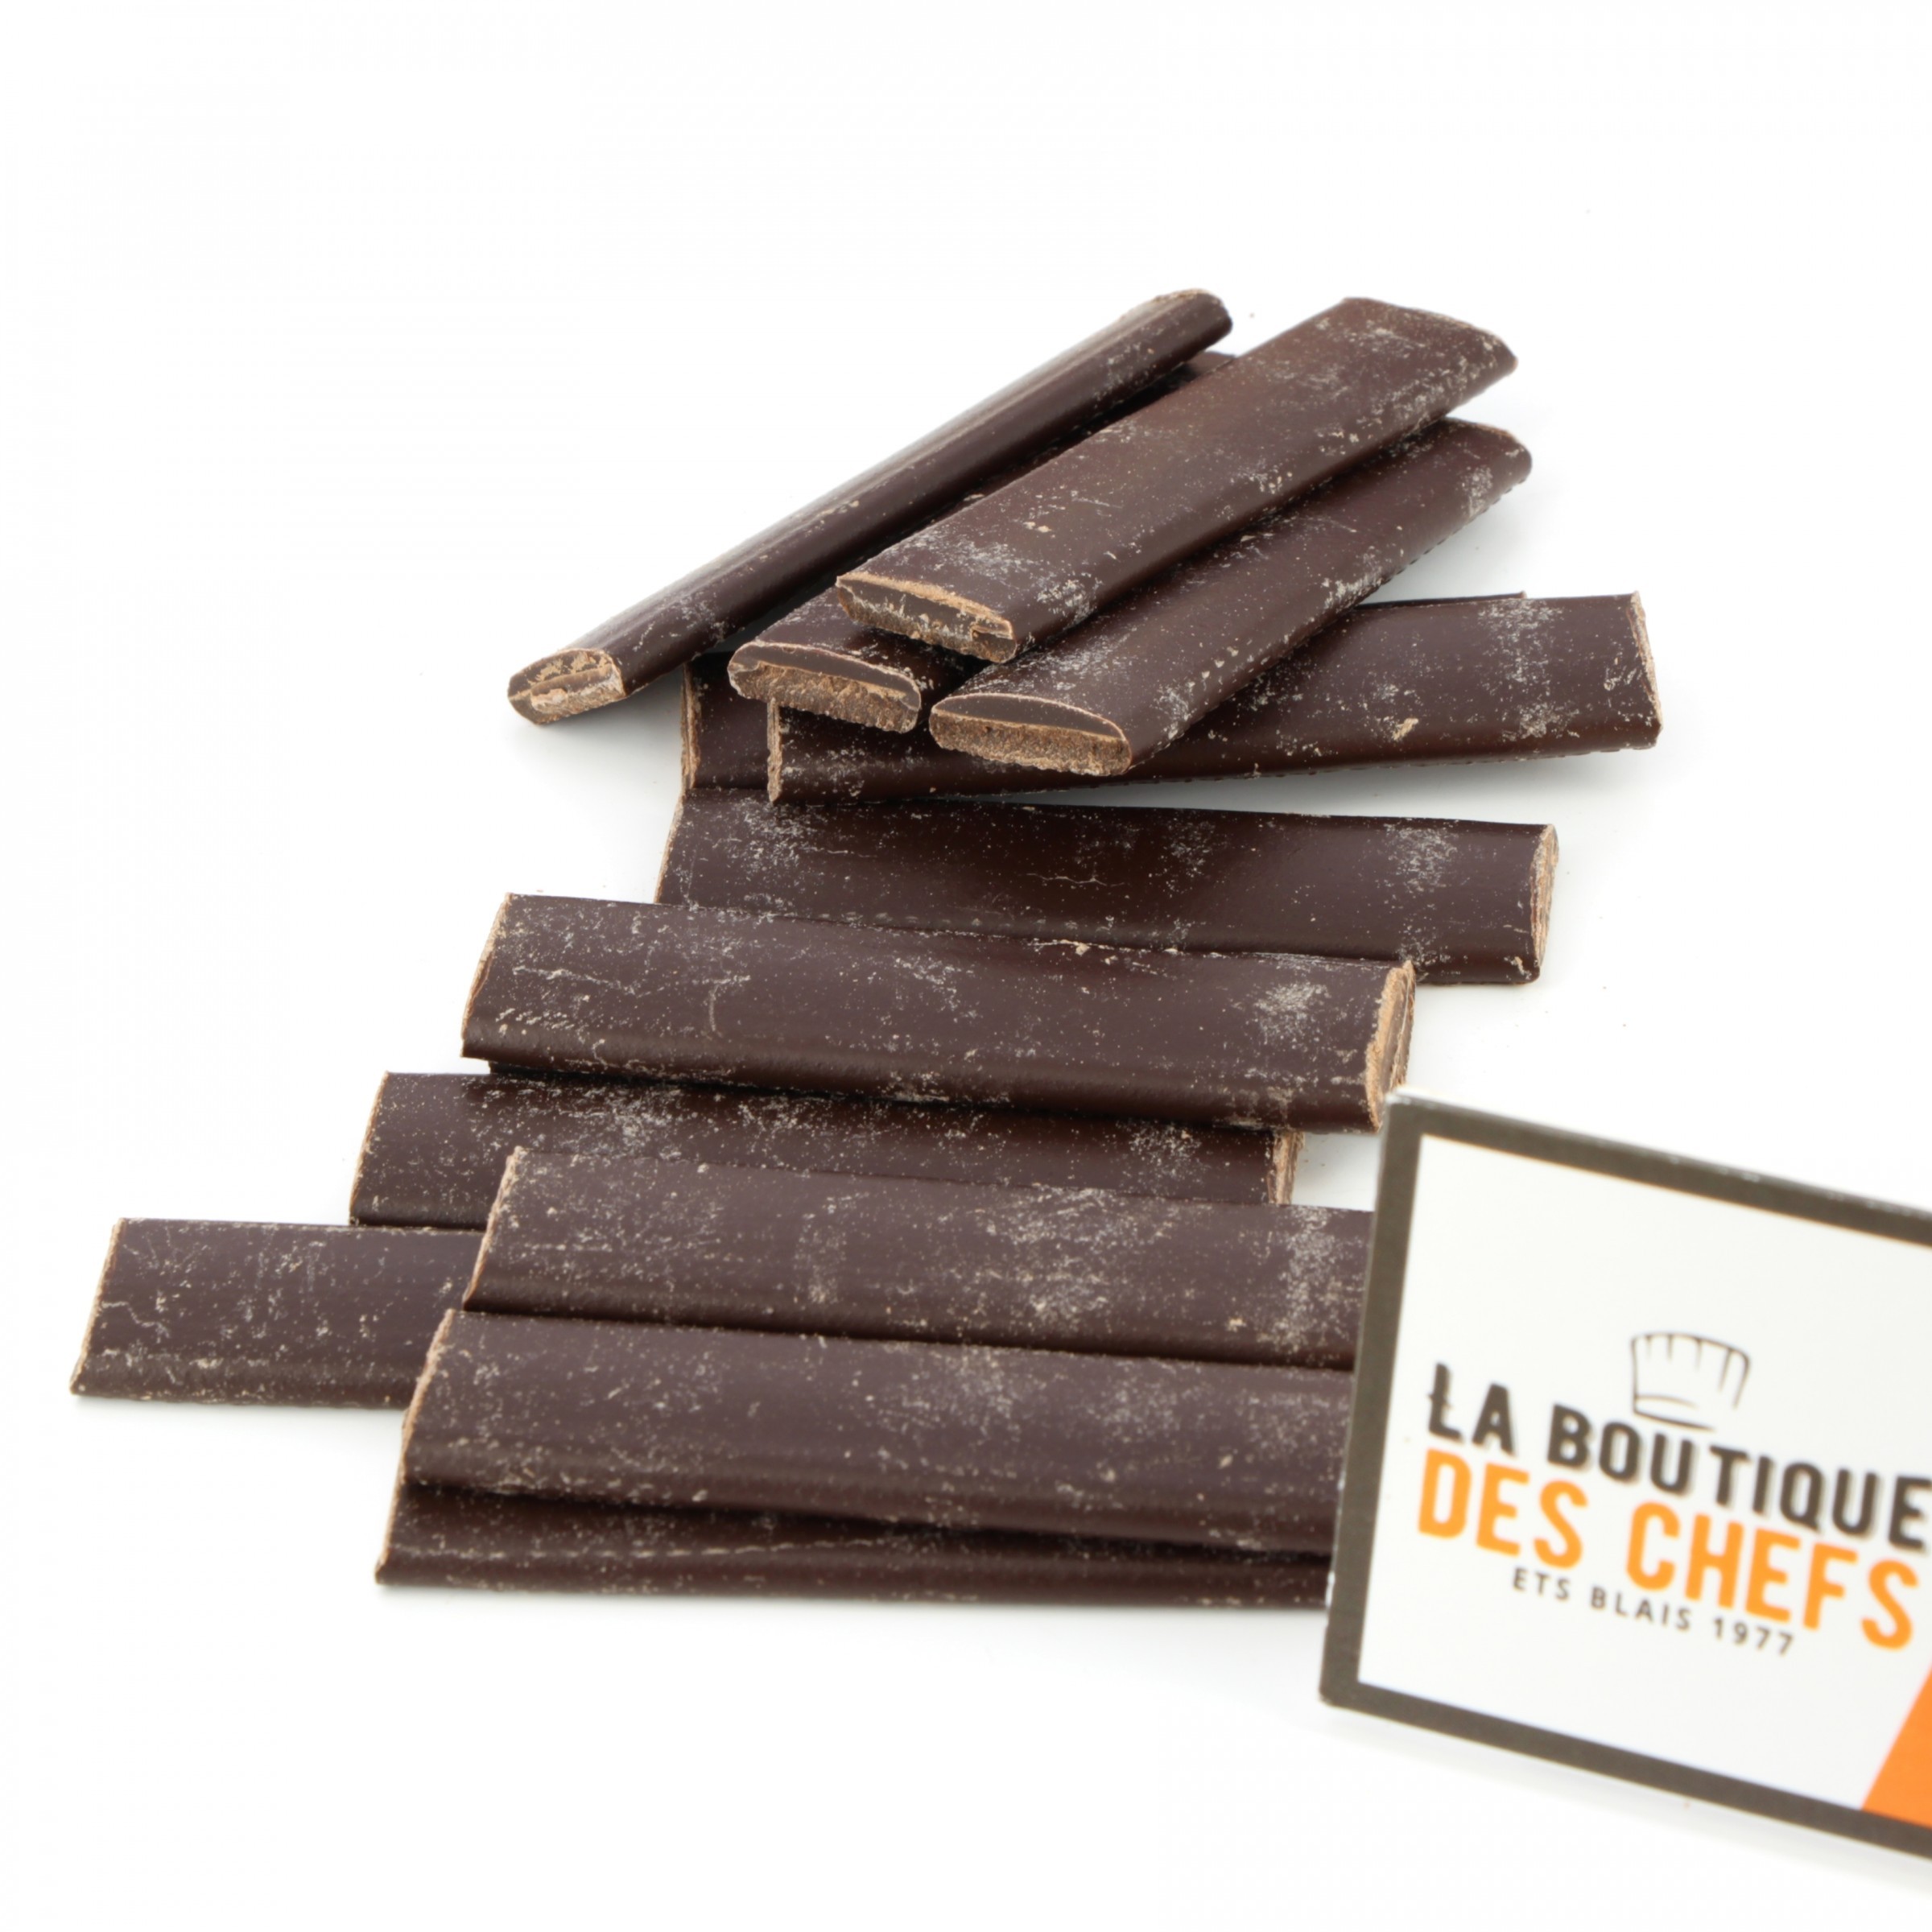 https://www.laboutiquedeschefs.com/media/images/products/w-2400-h-2400-zc-5-larges-ou-maxi-batons-de-chocolat-noir-de-78-cm-par-2-cm-3-1618406439.jpg